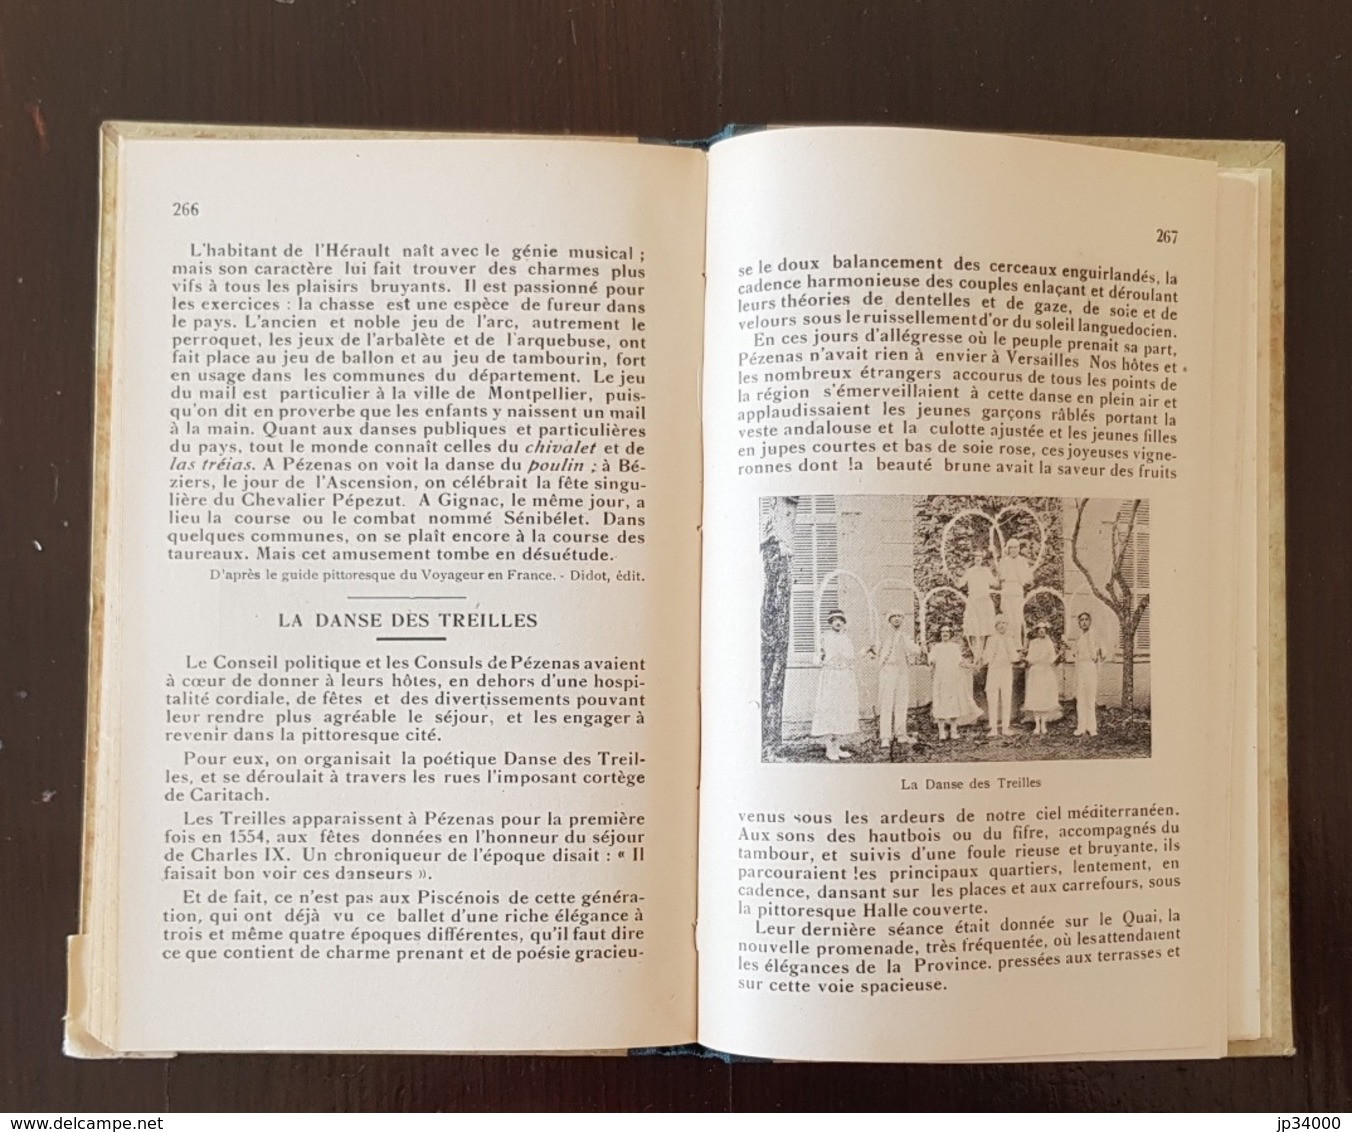 L'HERAULT GEOGRAPHIQUE & HISTORIQUE choix de lecture. par Marres & Blanquet. 1930